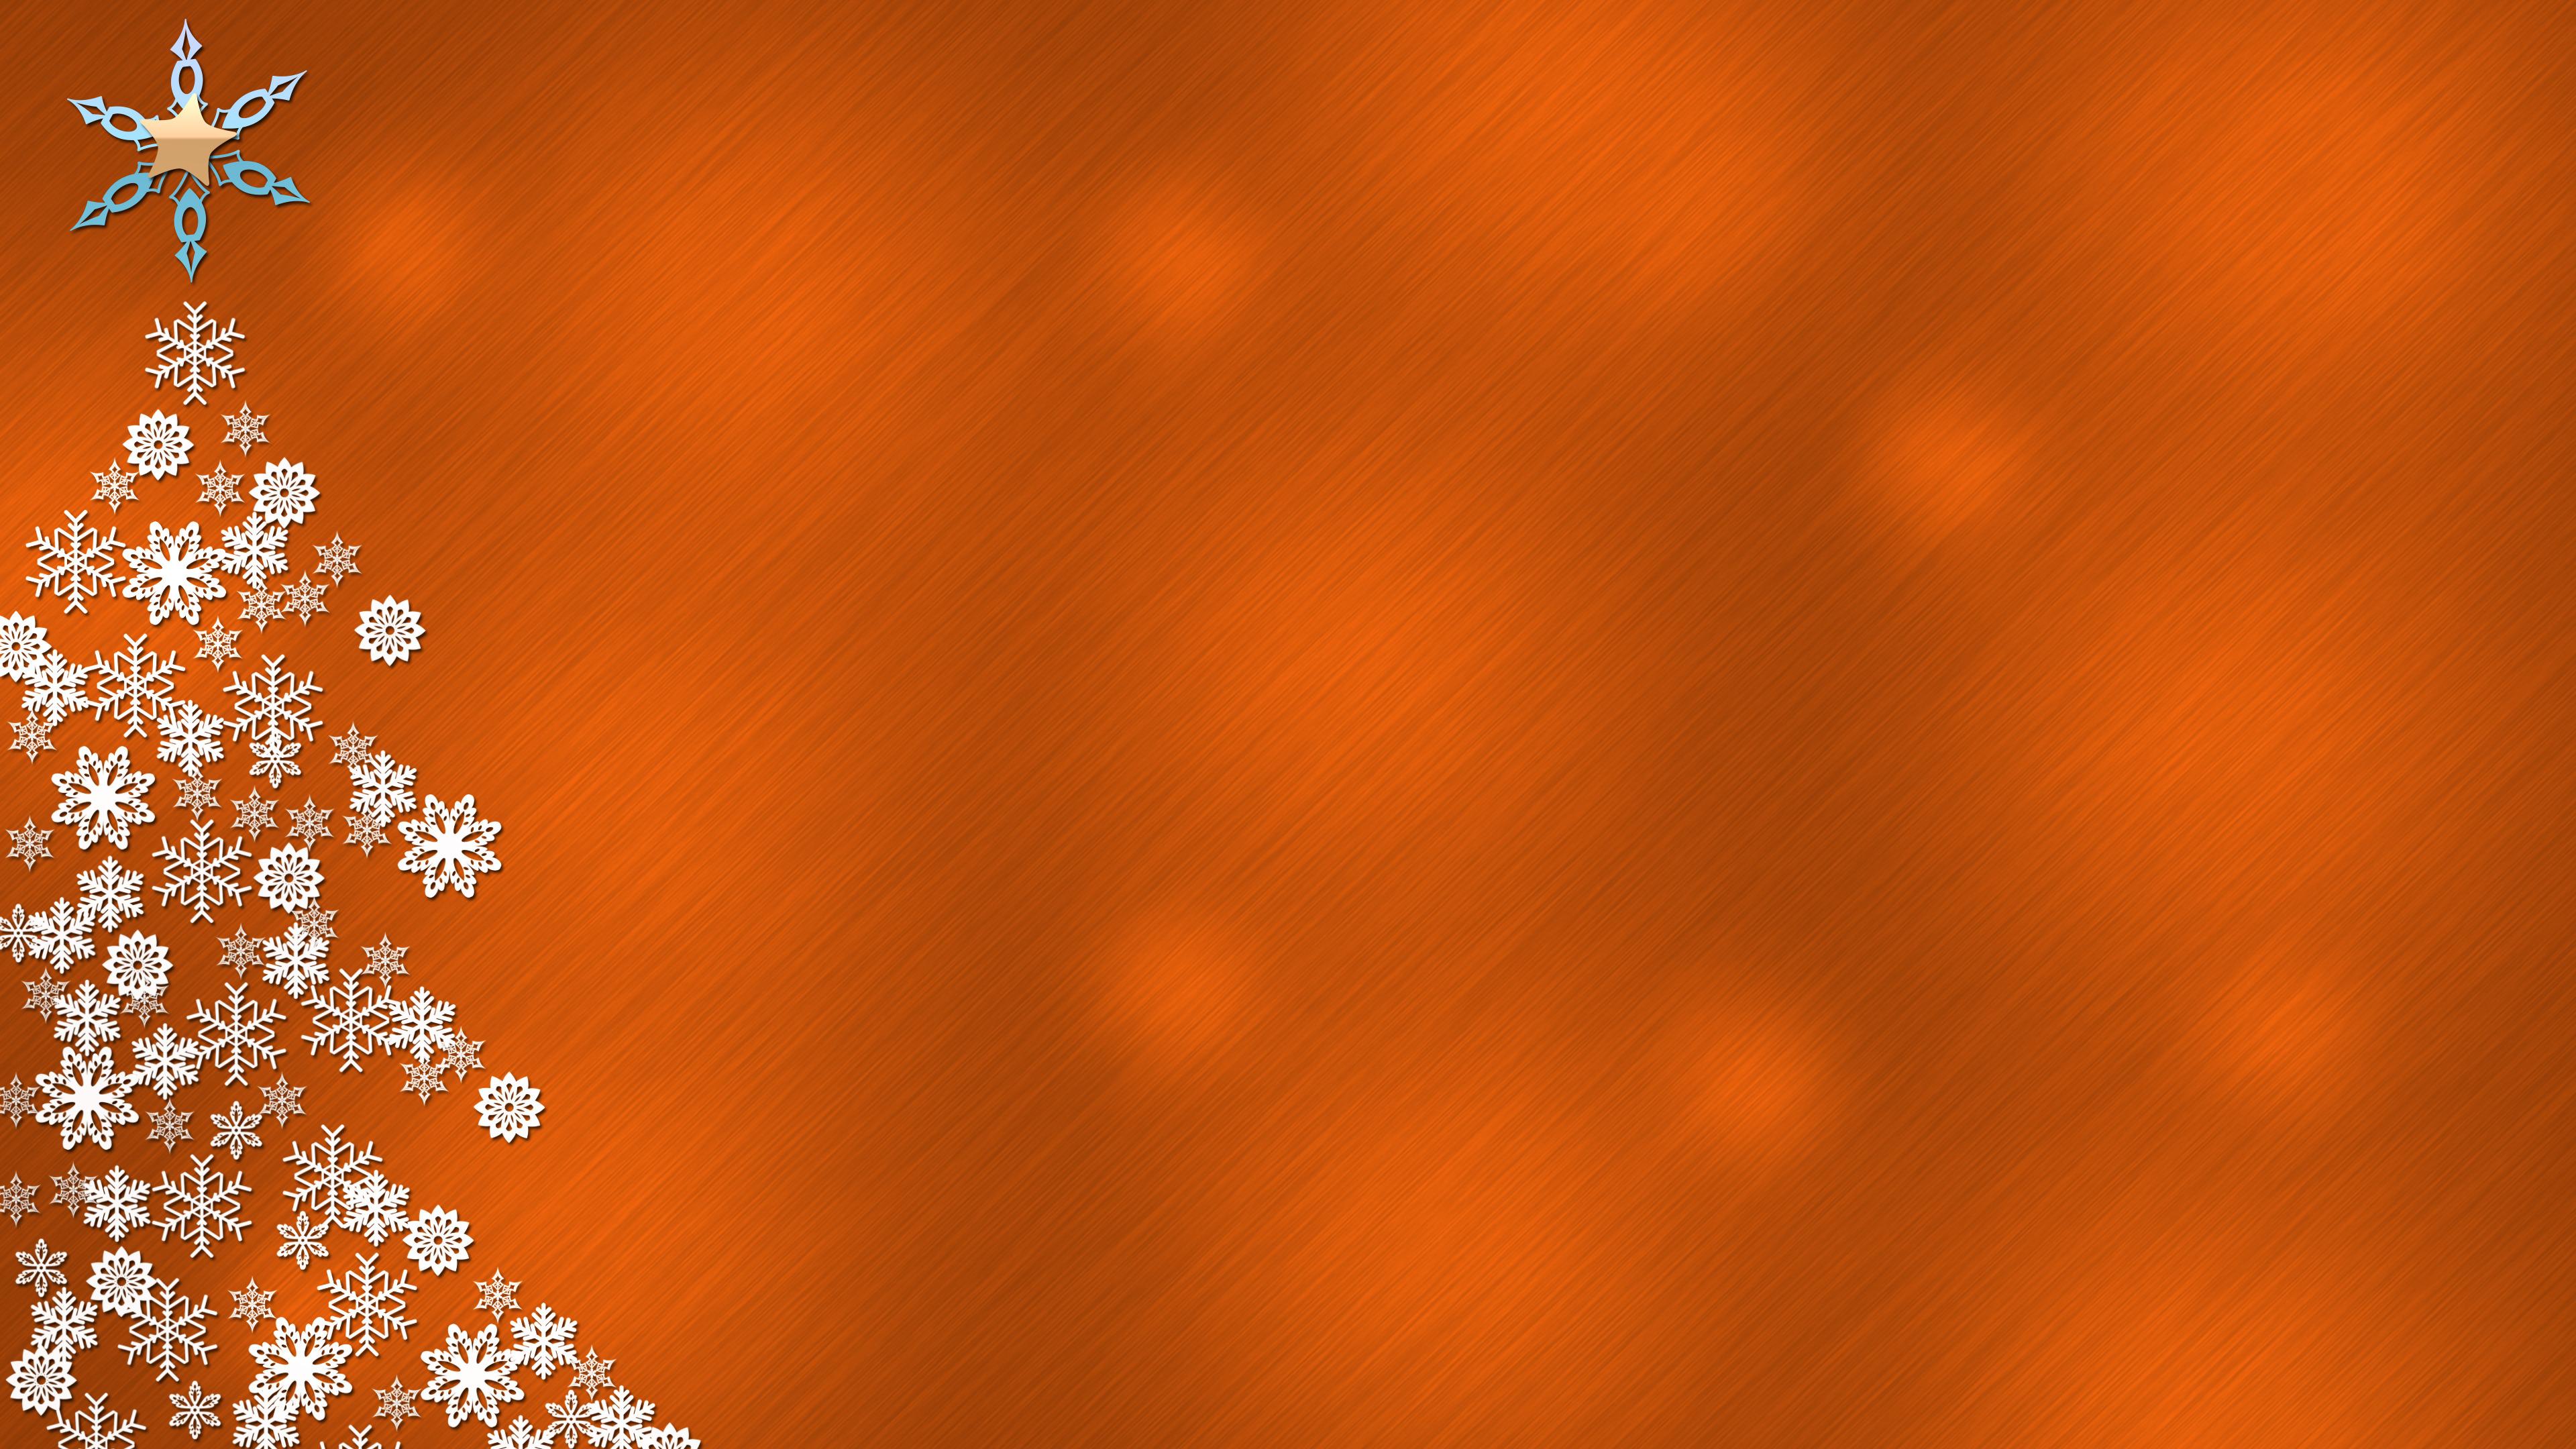 Đừng bỏ lỡ những hình nền Giáng sinh màu cam sang trọng và đáng yêu này, chúng chắc chắn sẽ khiến cho màn hình của bạn trở nên sống động và tươi sáng hơn trong mùa lễ hội sắp tới. Hãy để mọi người hướng về phía bạn với những hình nền naranja tuyệt đẹp và đầy yêu thương này.